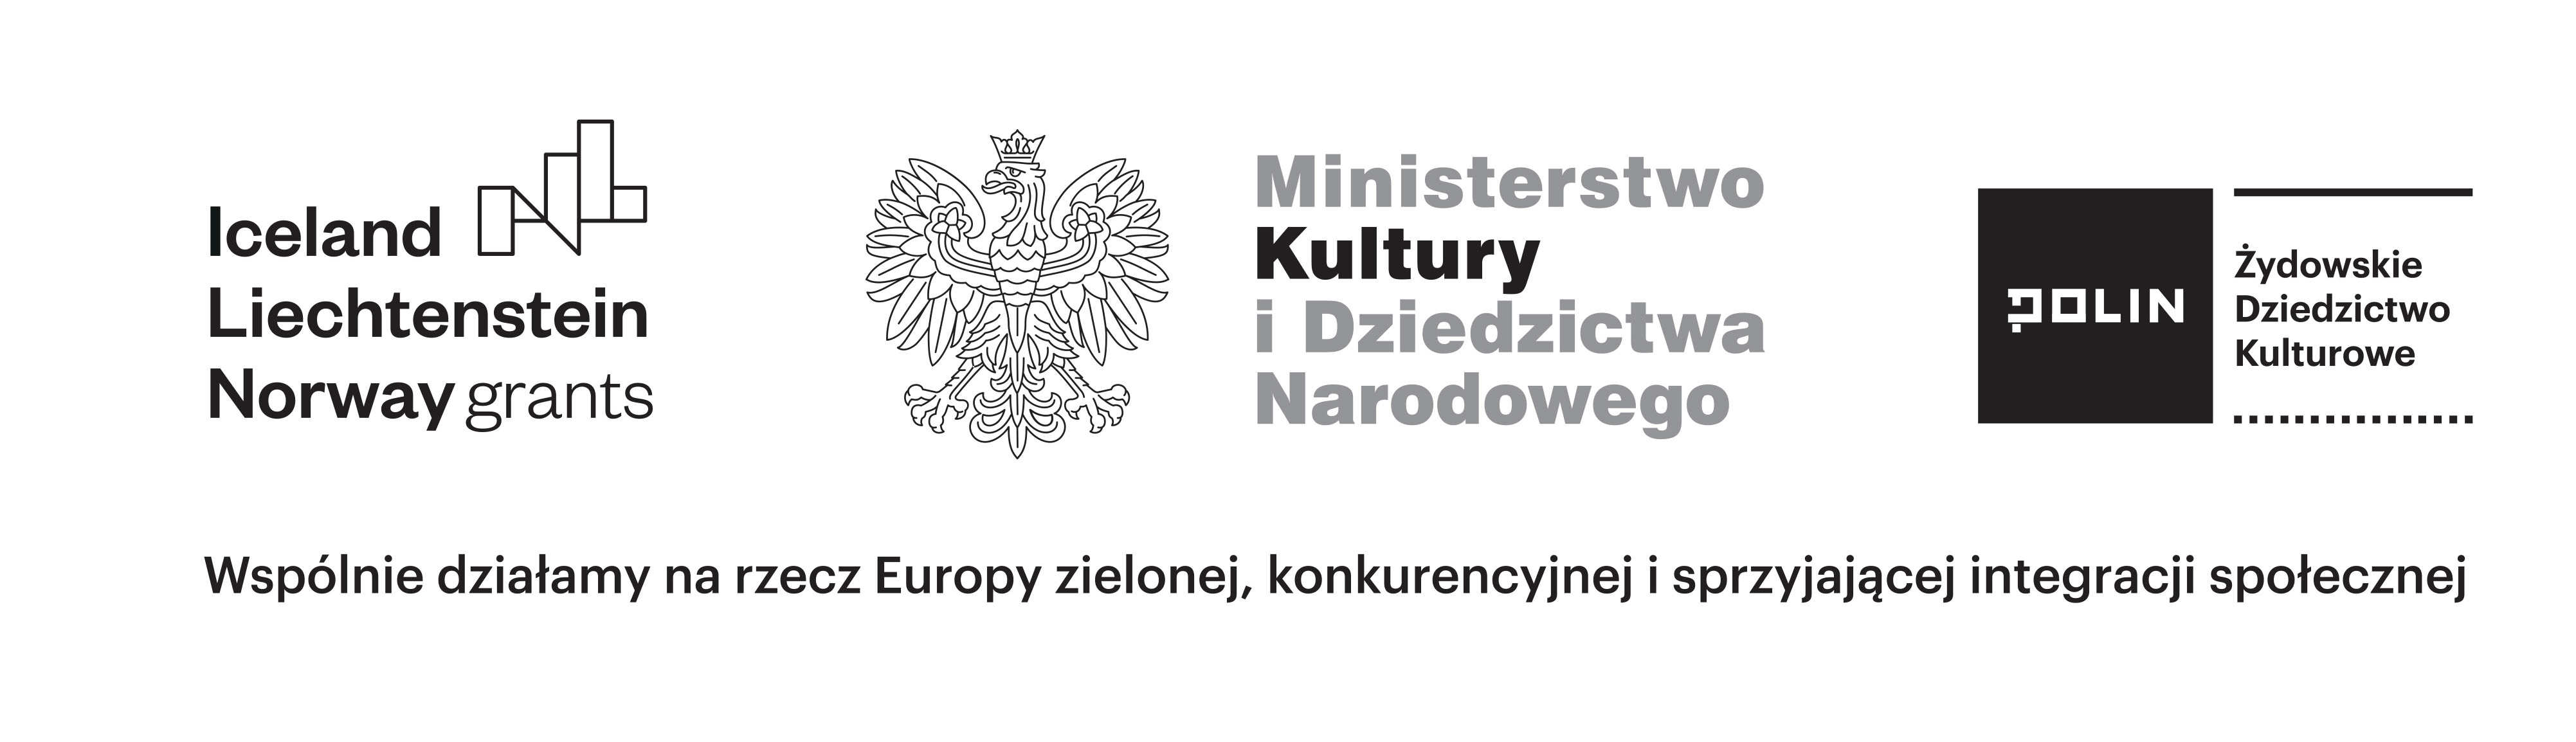 Logotyp projektu „Żydowskie Dziedzictwo Kulturowe”.